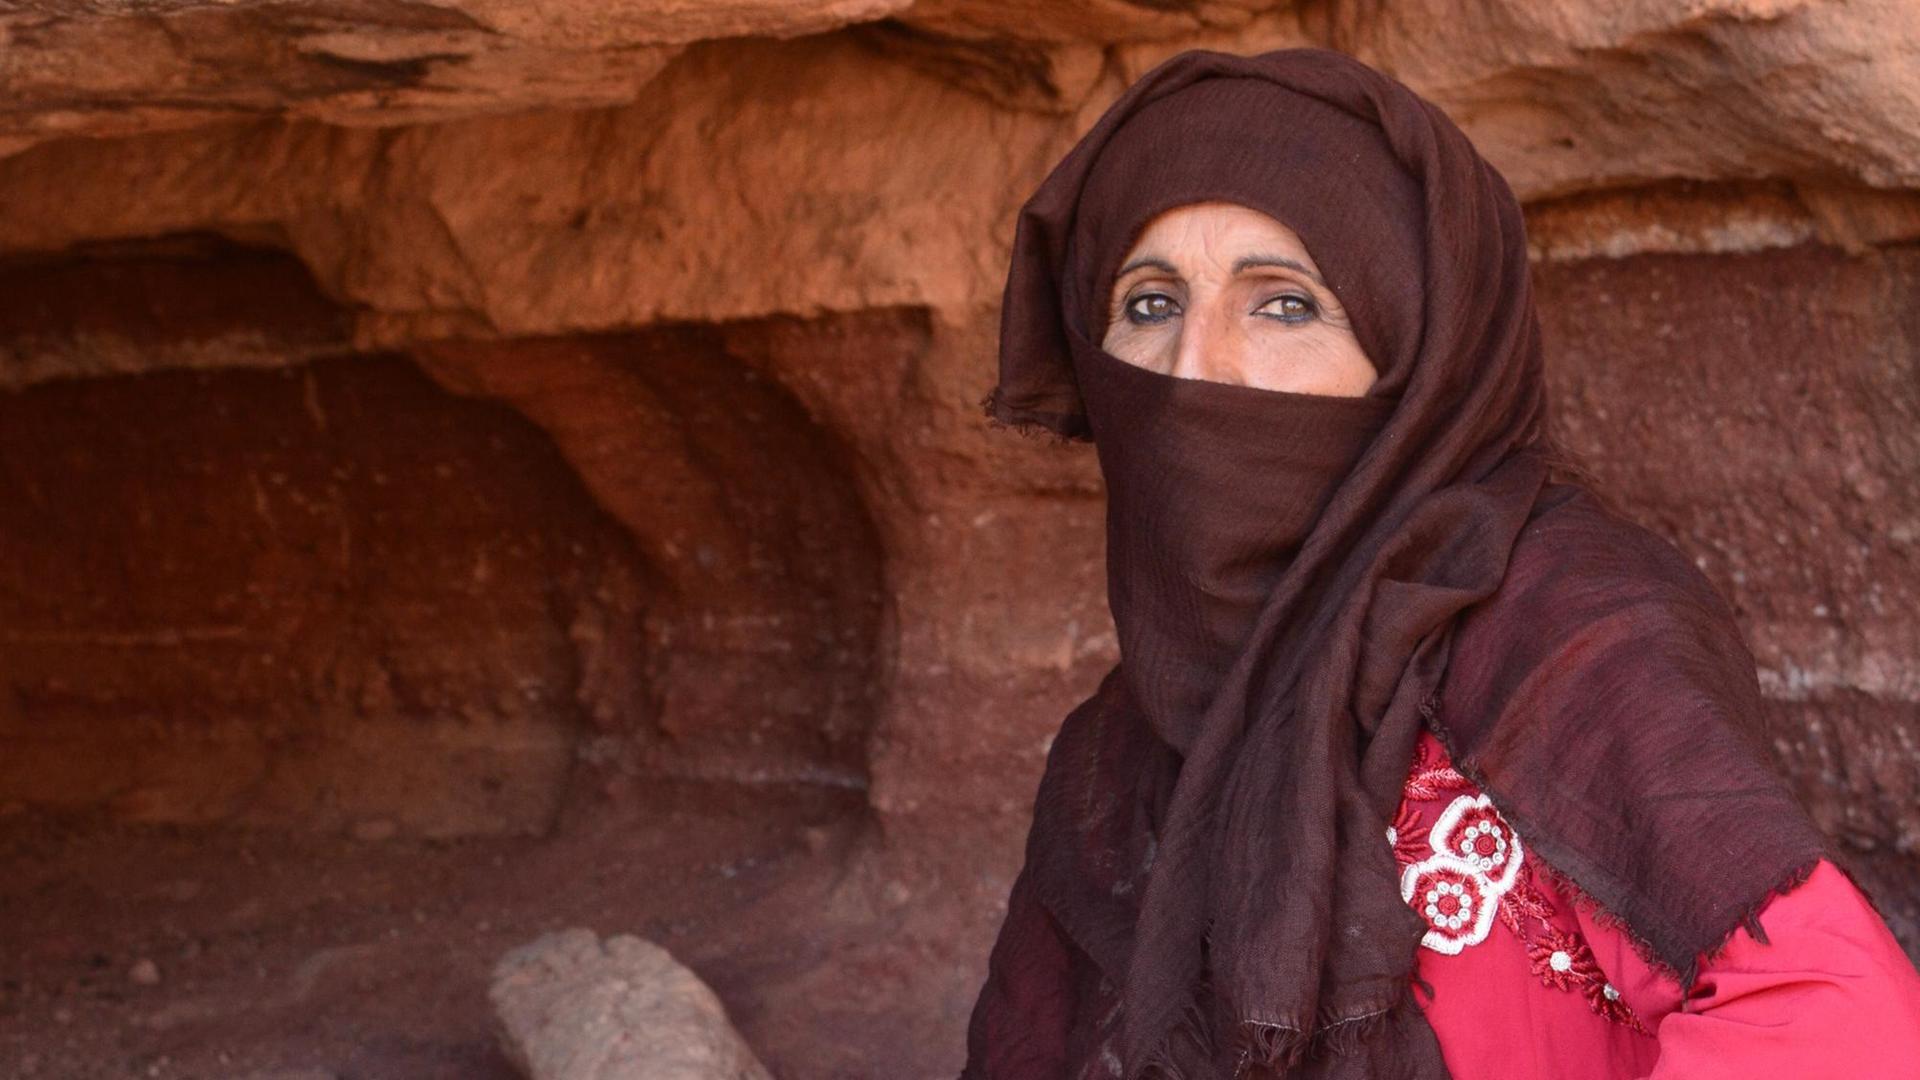 Die 48-jährige Wanderführerin Umm Yasser ist in der Höhle hinter ihr aufgewachsen. Durch die Corona-Pandemie kommen derzeit keine Touristen in ihr Tal auf der Sinai-Halbinsel. Sie trägt ein rotes Kleid und ein bräunliches Tuch um den Kopf.